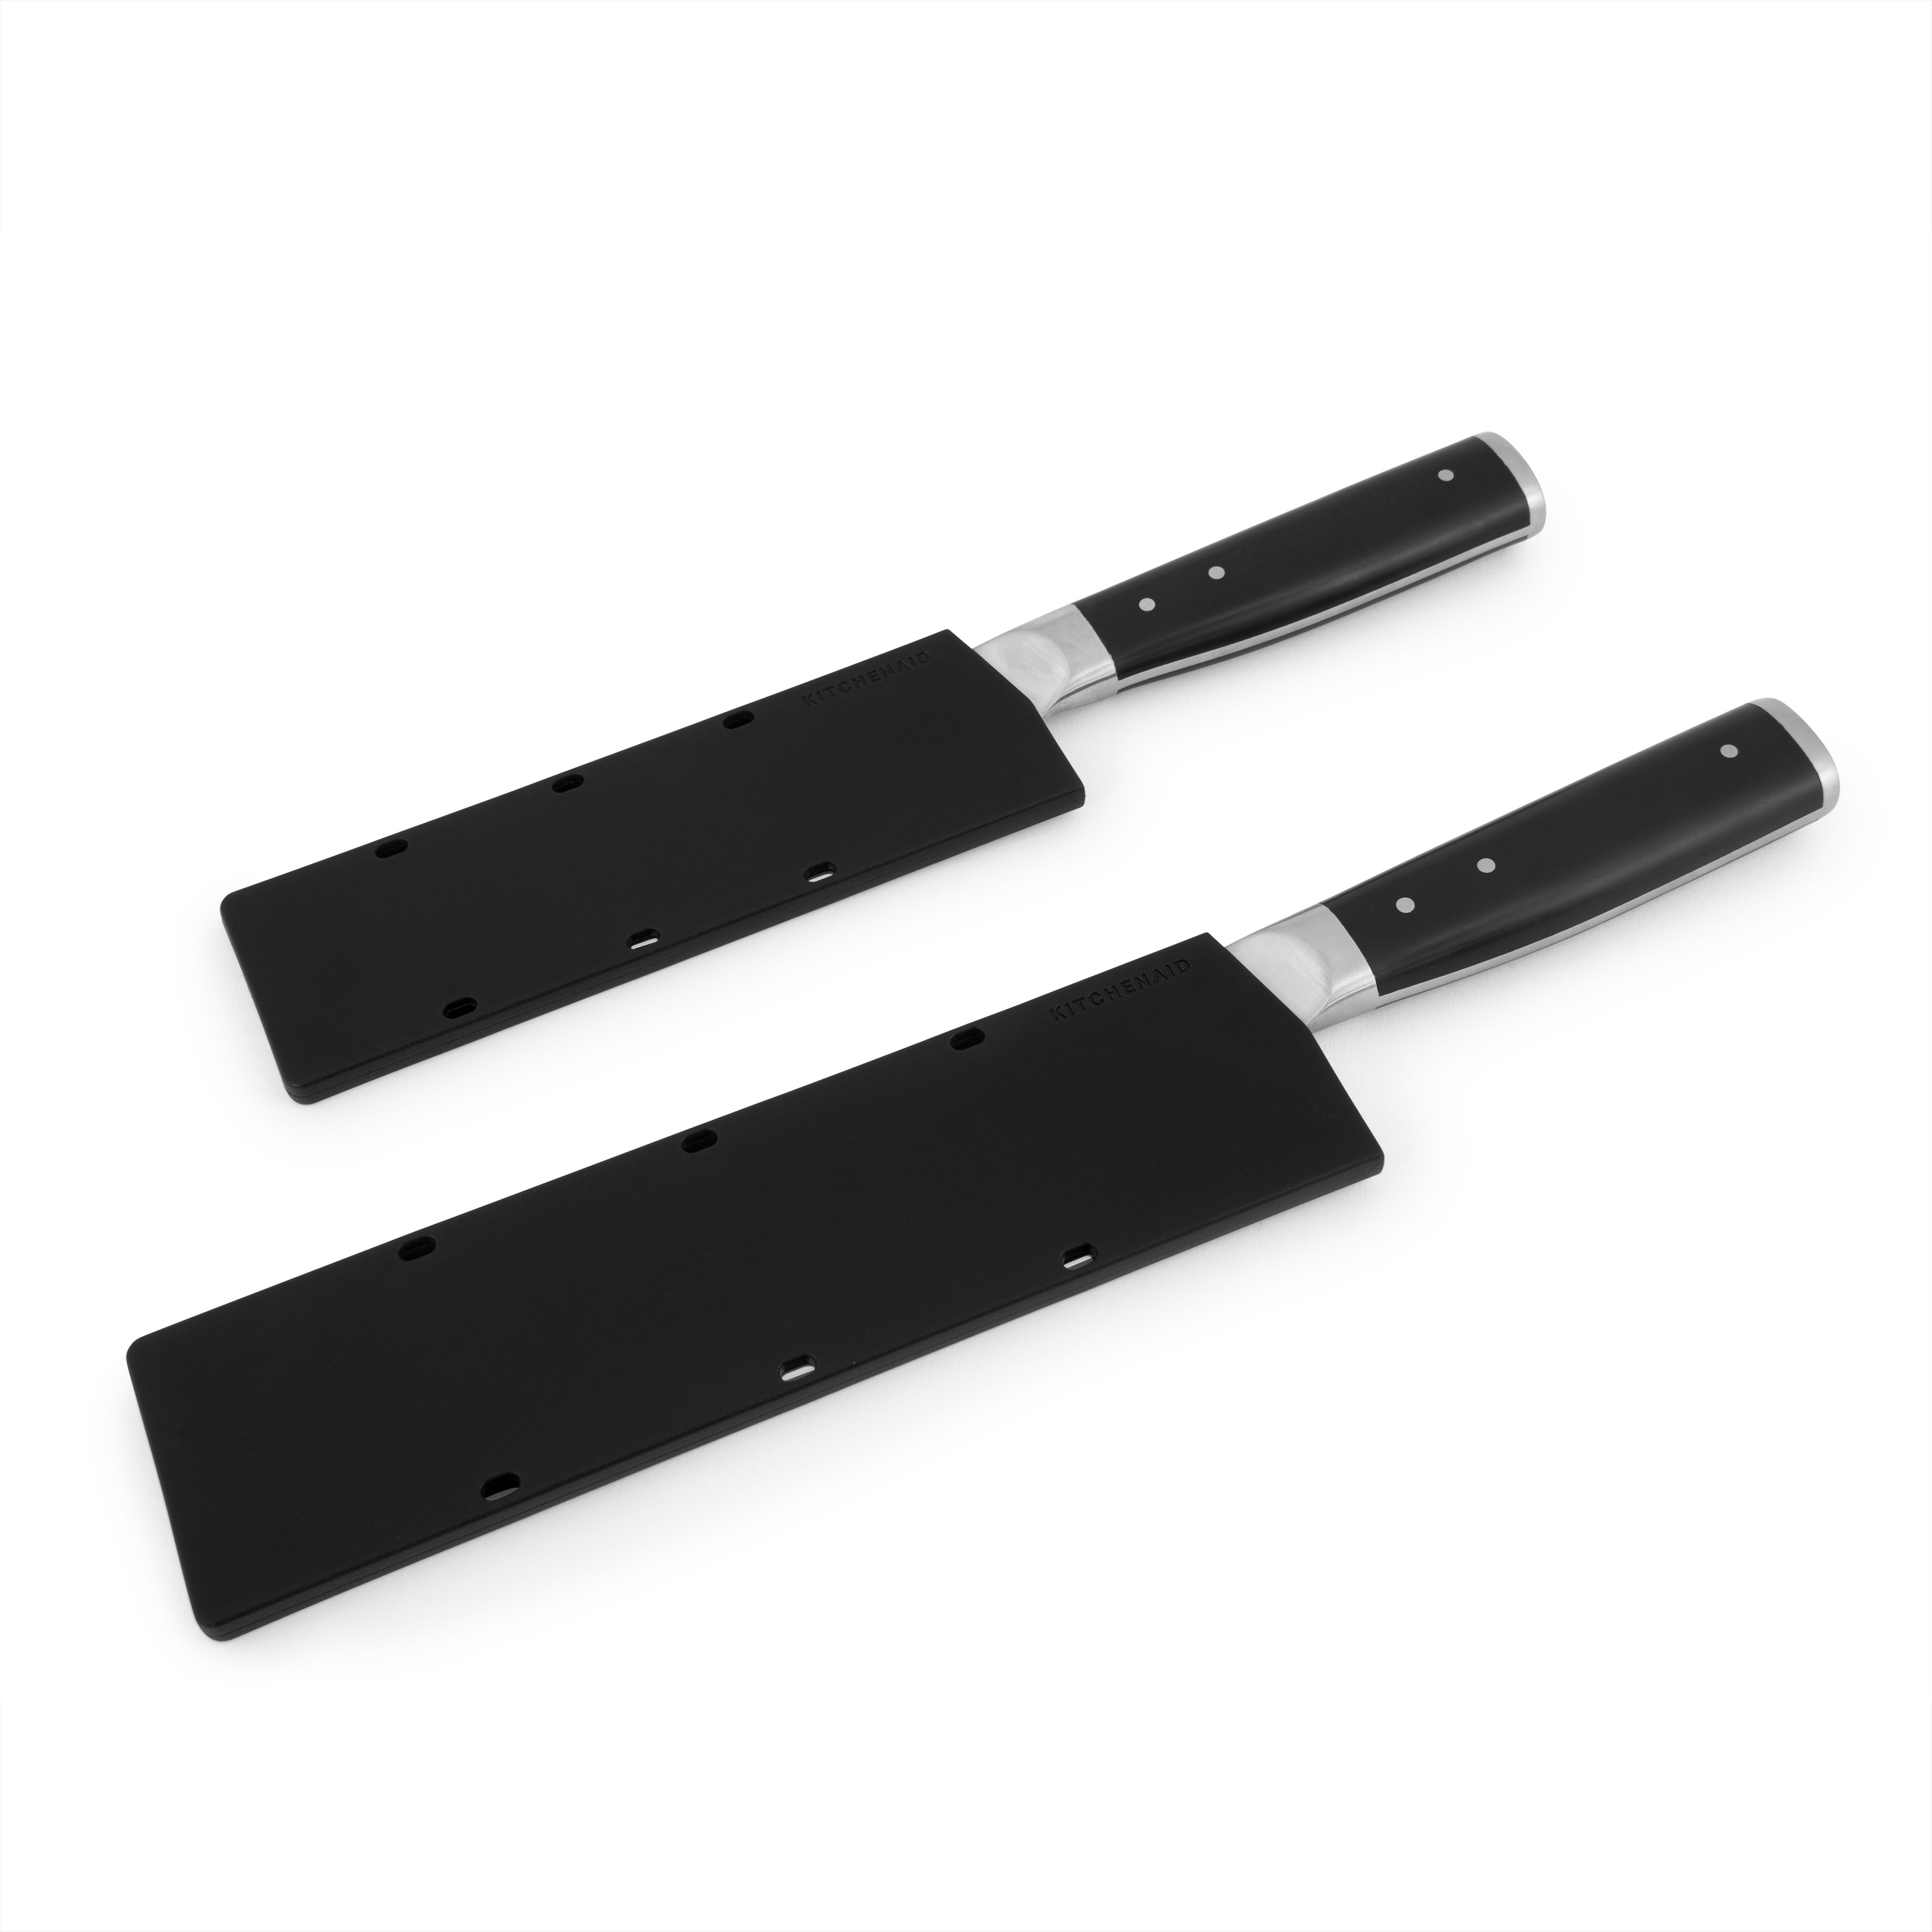 https://assets.wfcdn.com/im/51105184/compr-r85/2271/227120217/set-of-2-santoku-knives.jpg